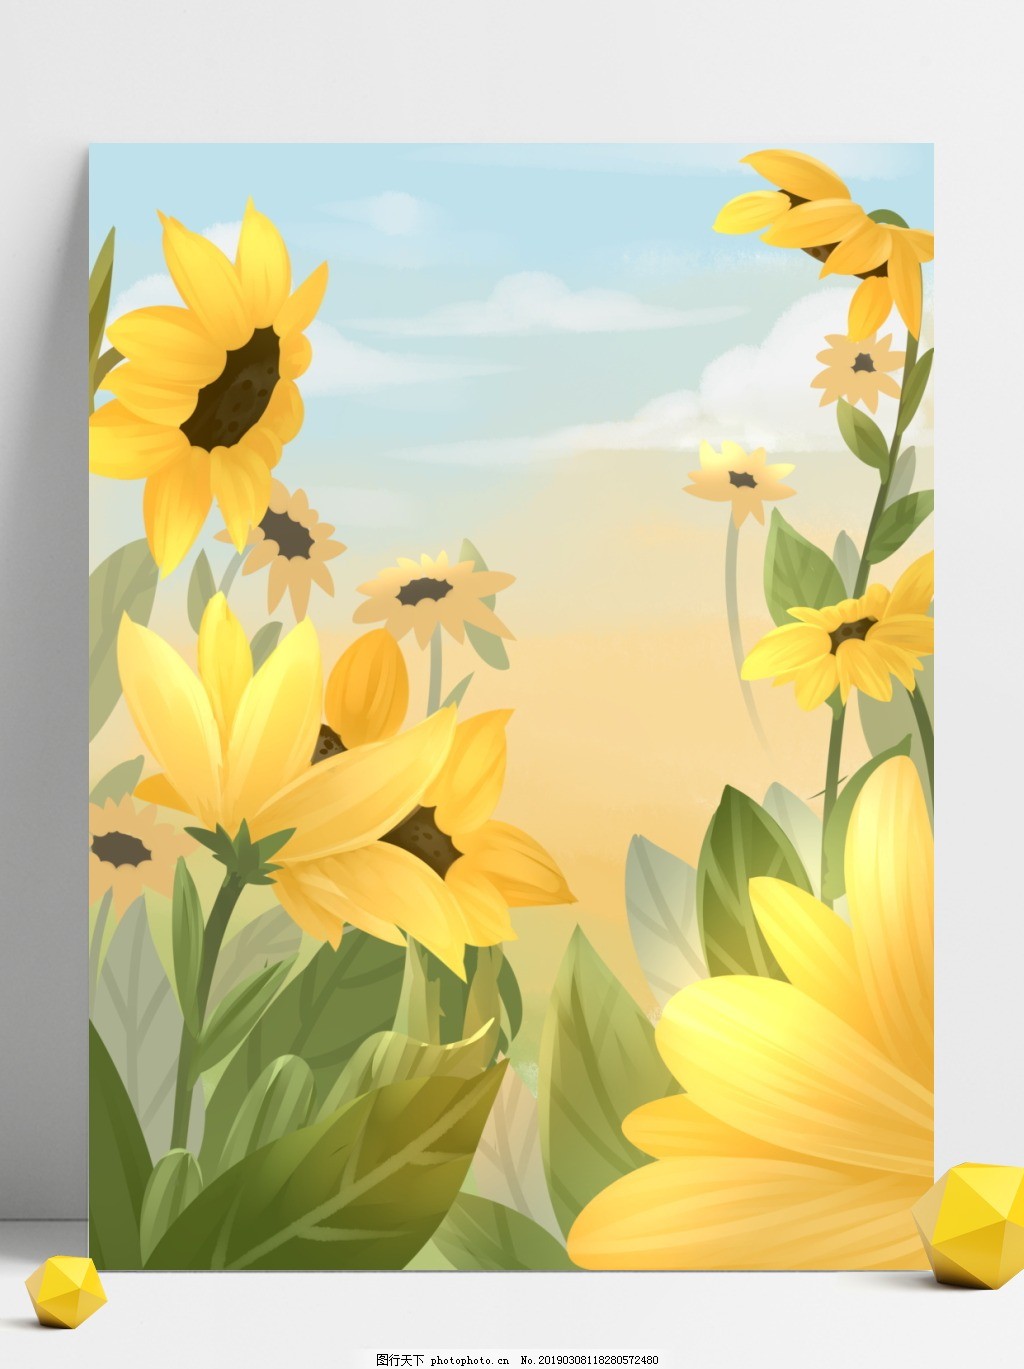 唯美向日葵植物插画背景图片 广告背景 底纹边框 图行天下素材网